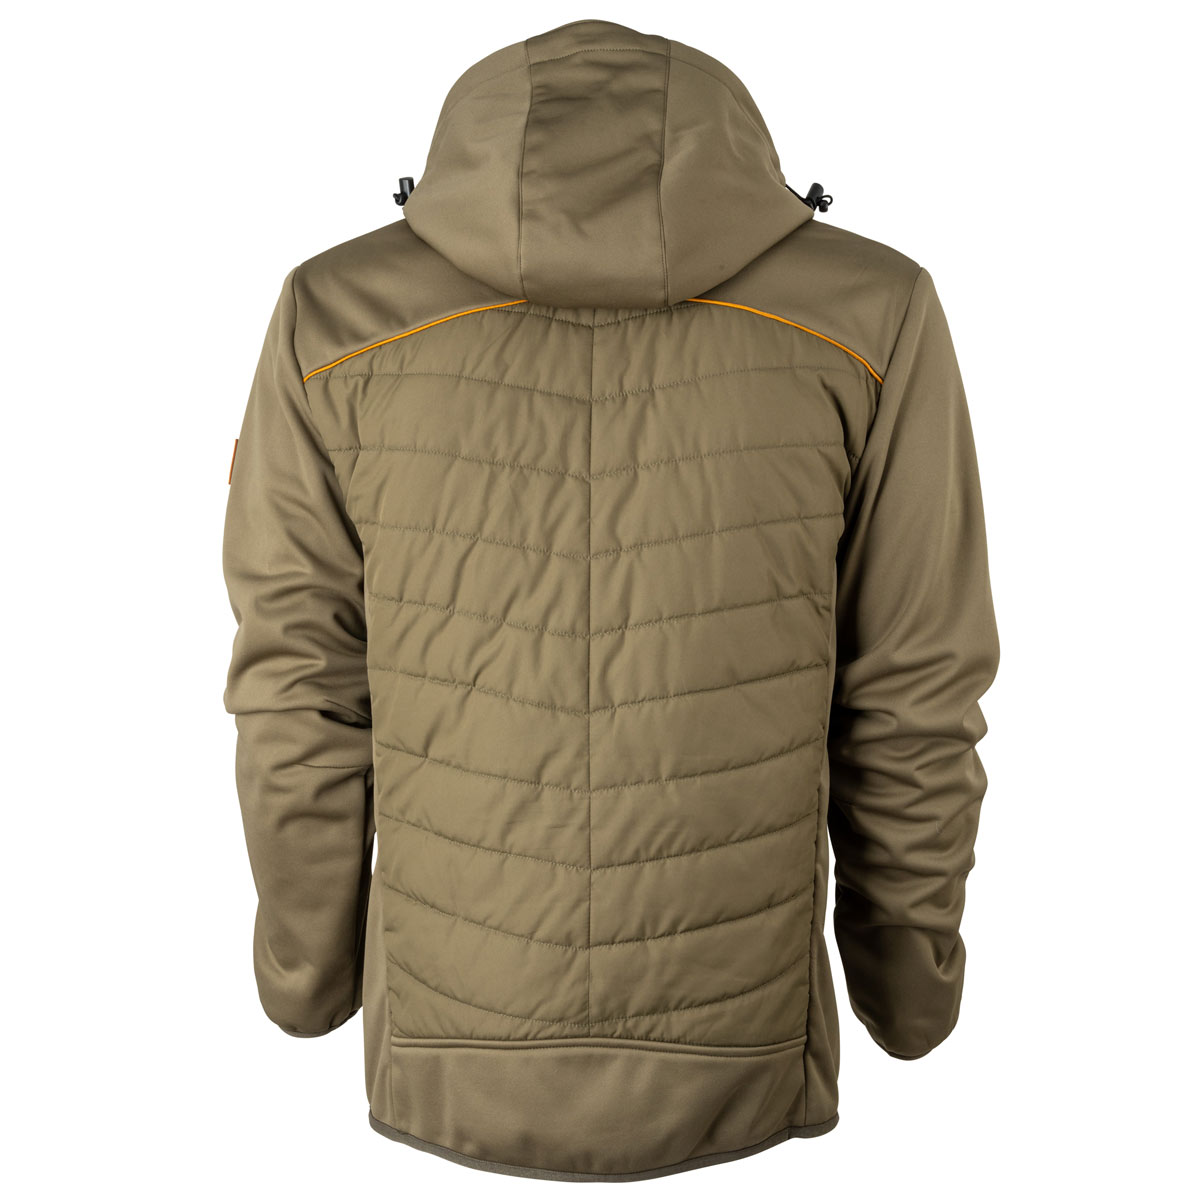 FORSBERG Alruut III hybrid jacket with detachable hood